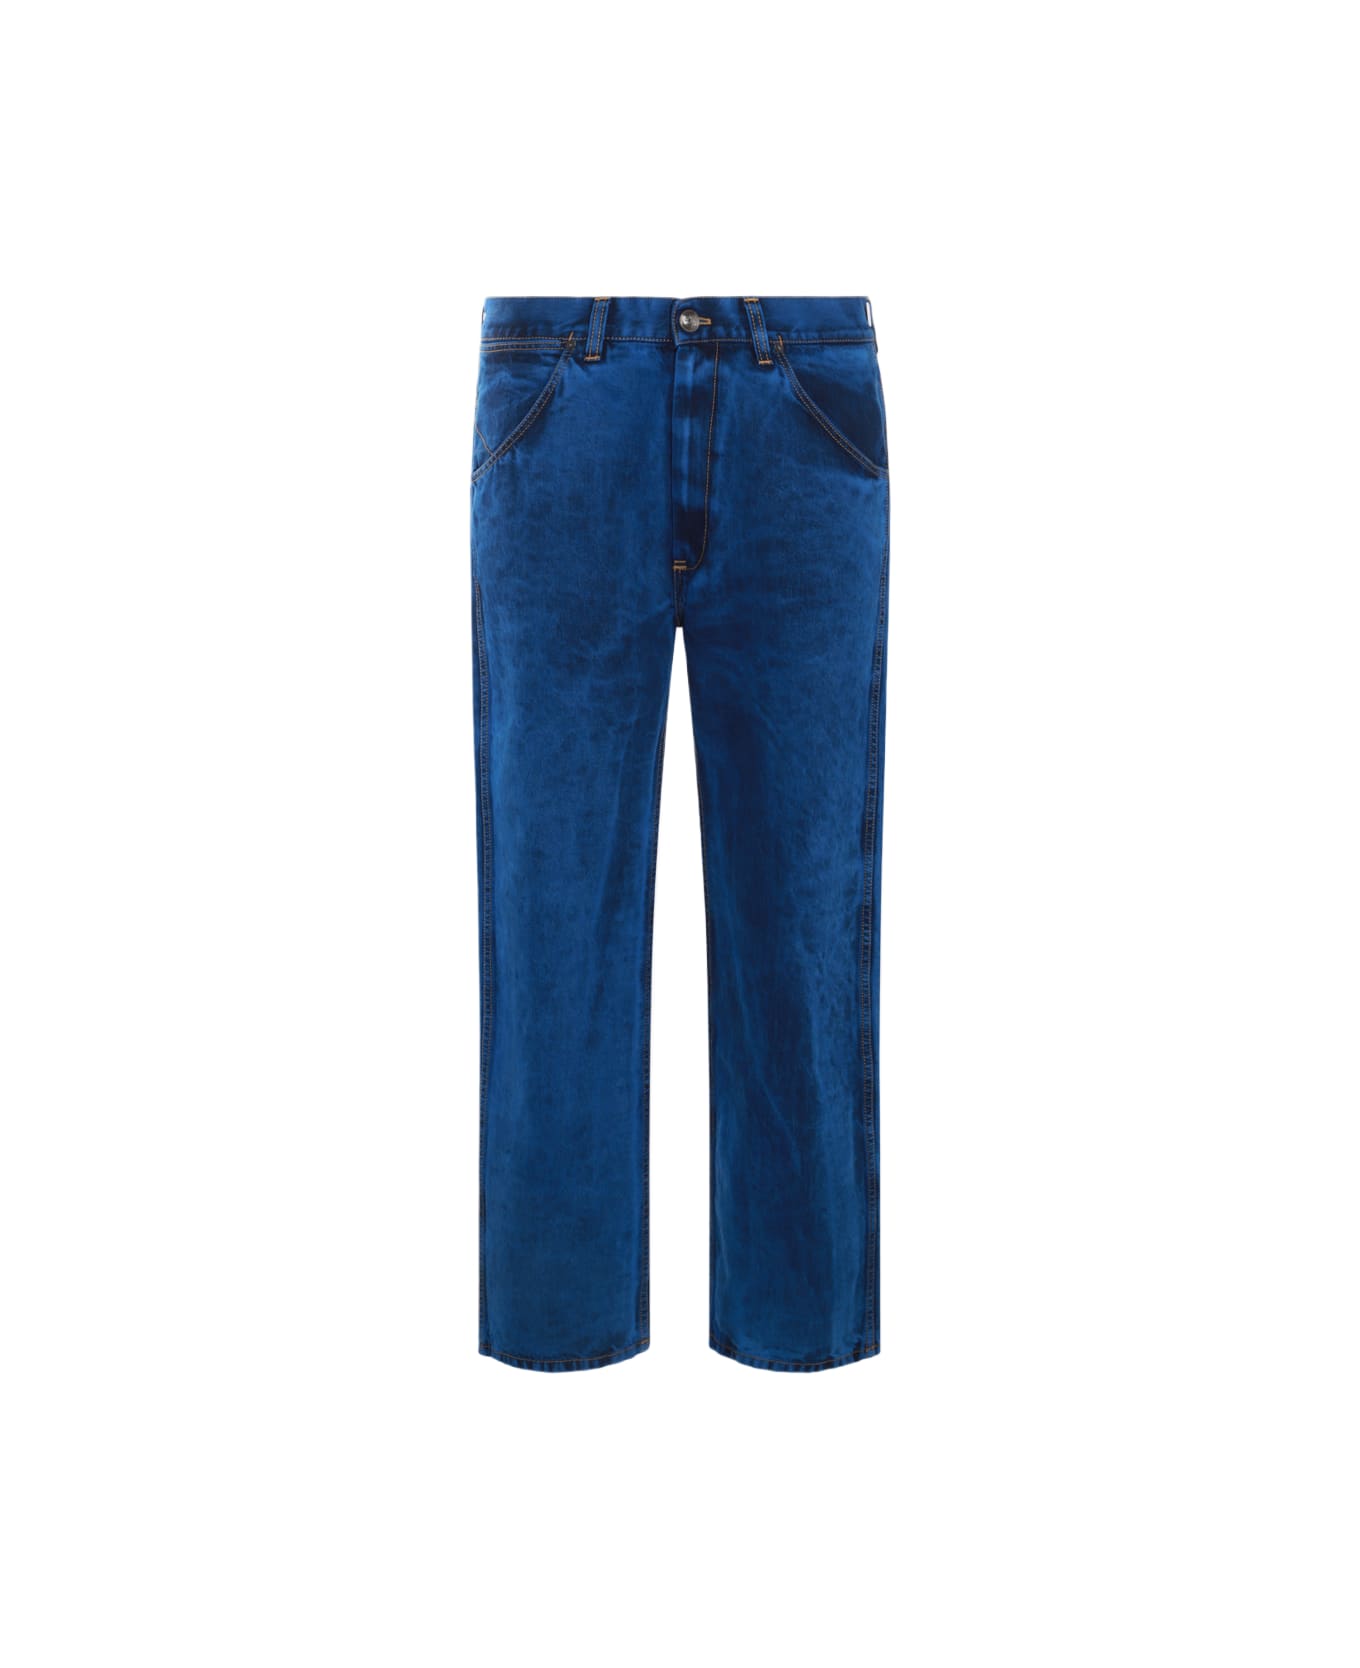 Vivienne Westwood Blue Cotton Pants - Blue ボトムス